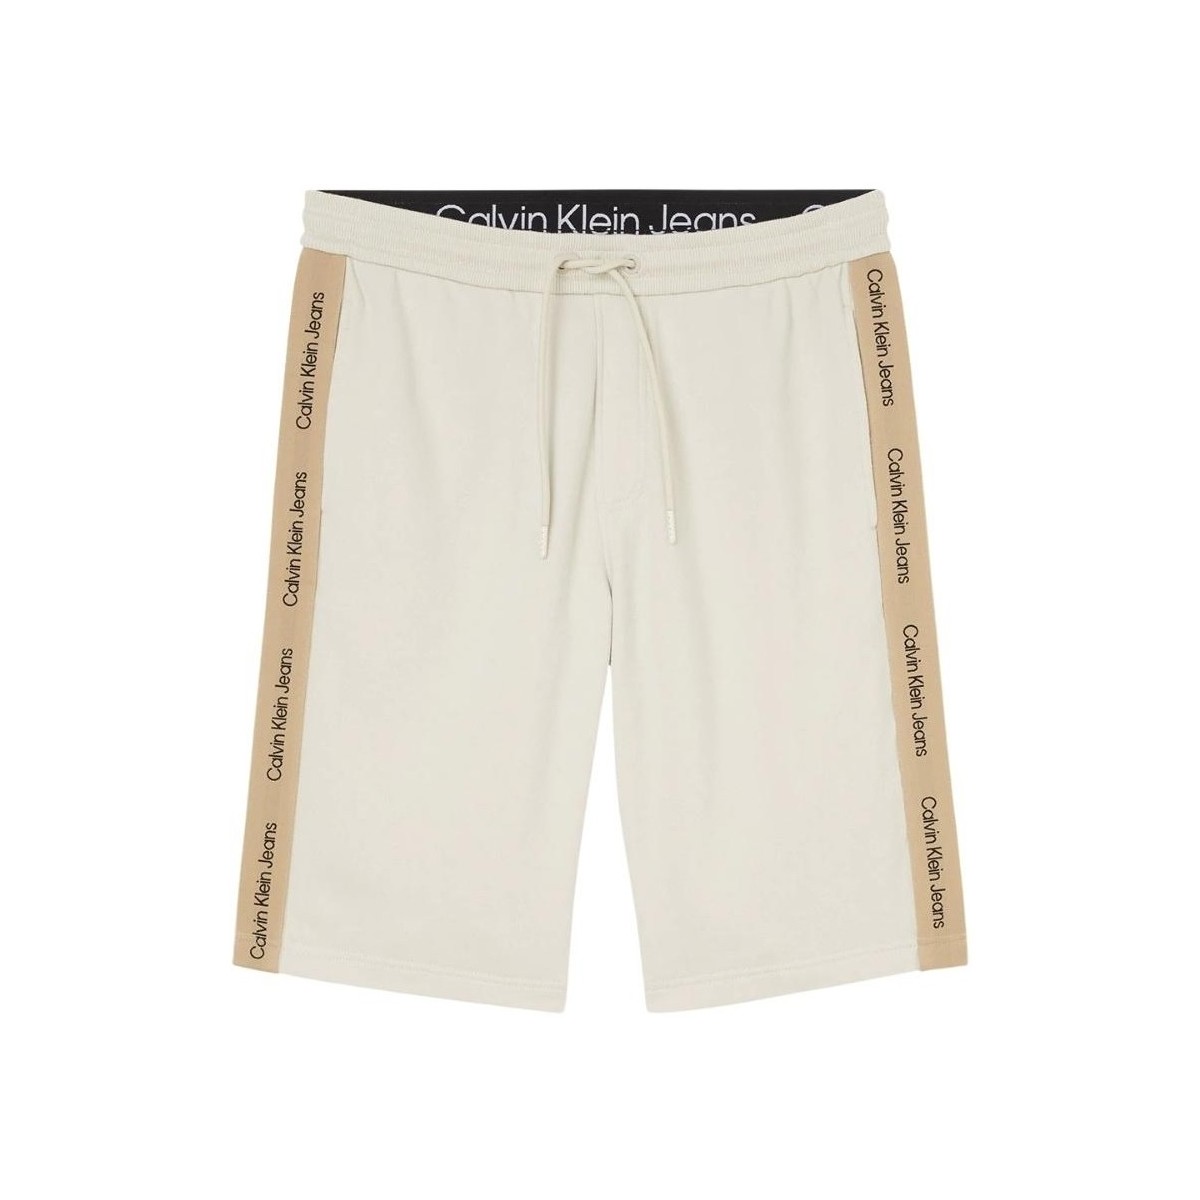 Vêtements Homme Shorts / Bermudas Calvin Klein Jeans Short Jogging  ref 56525 ACF Beige